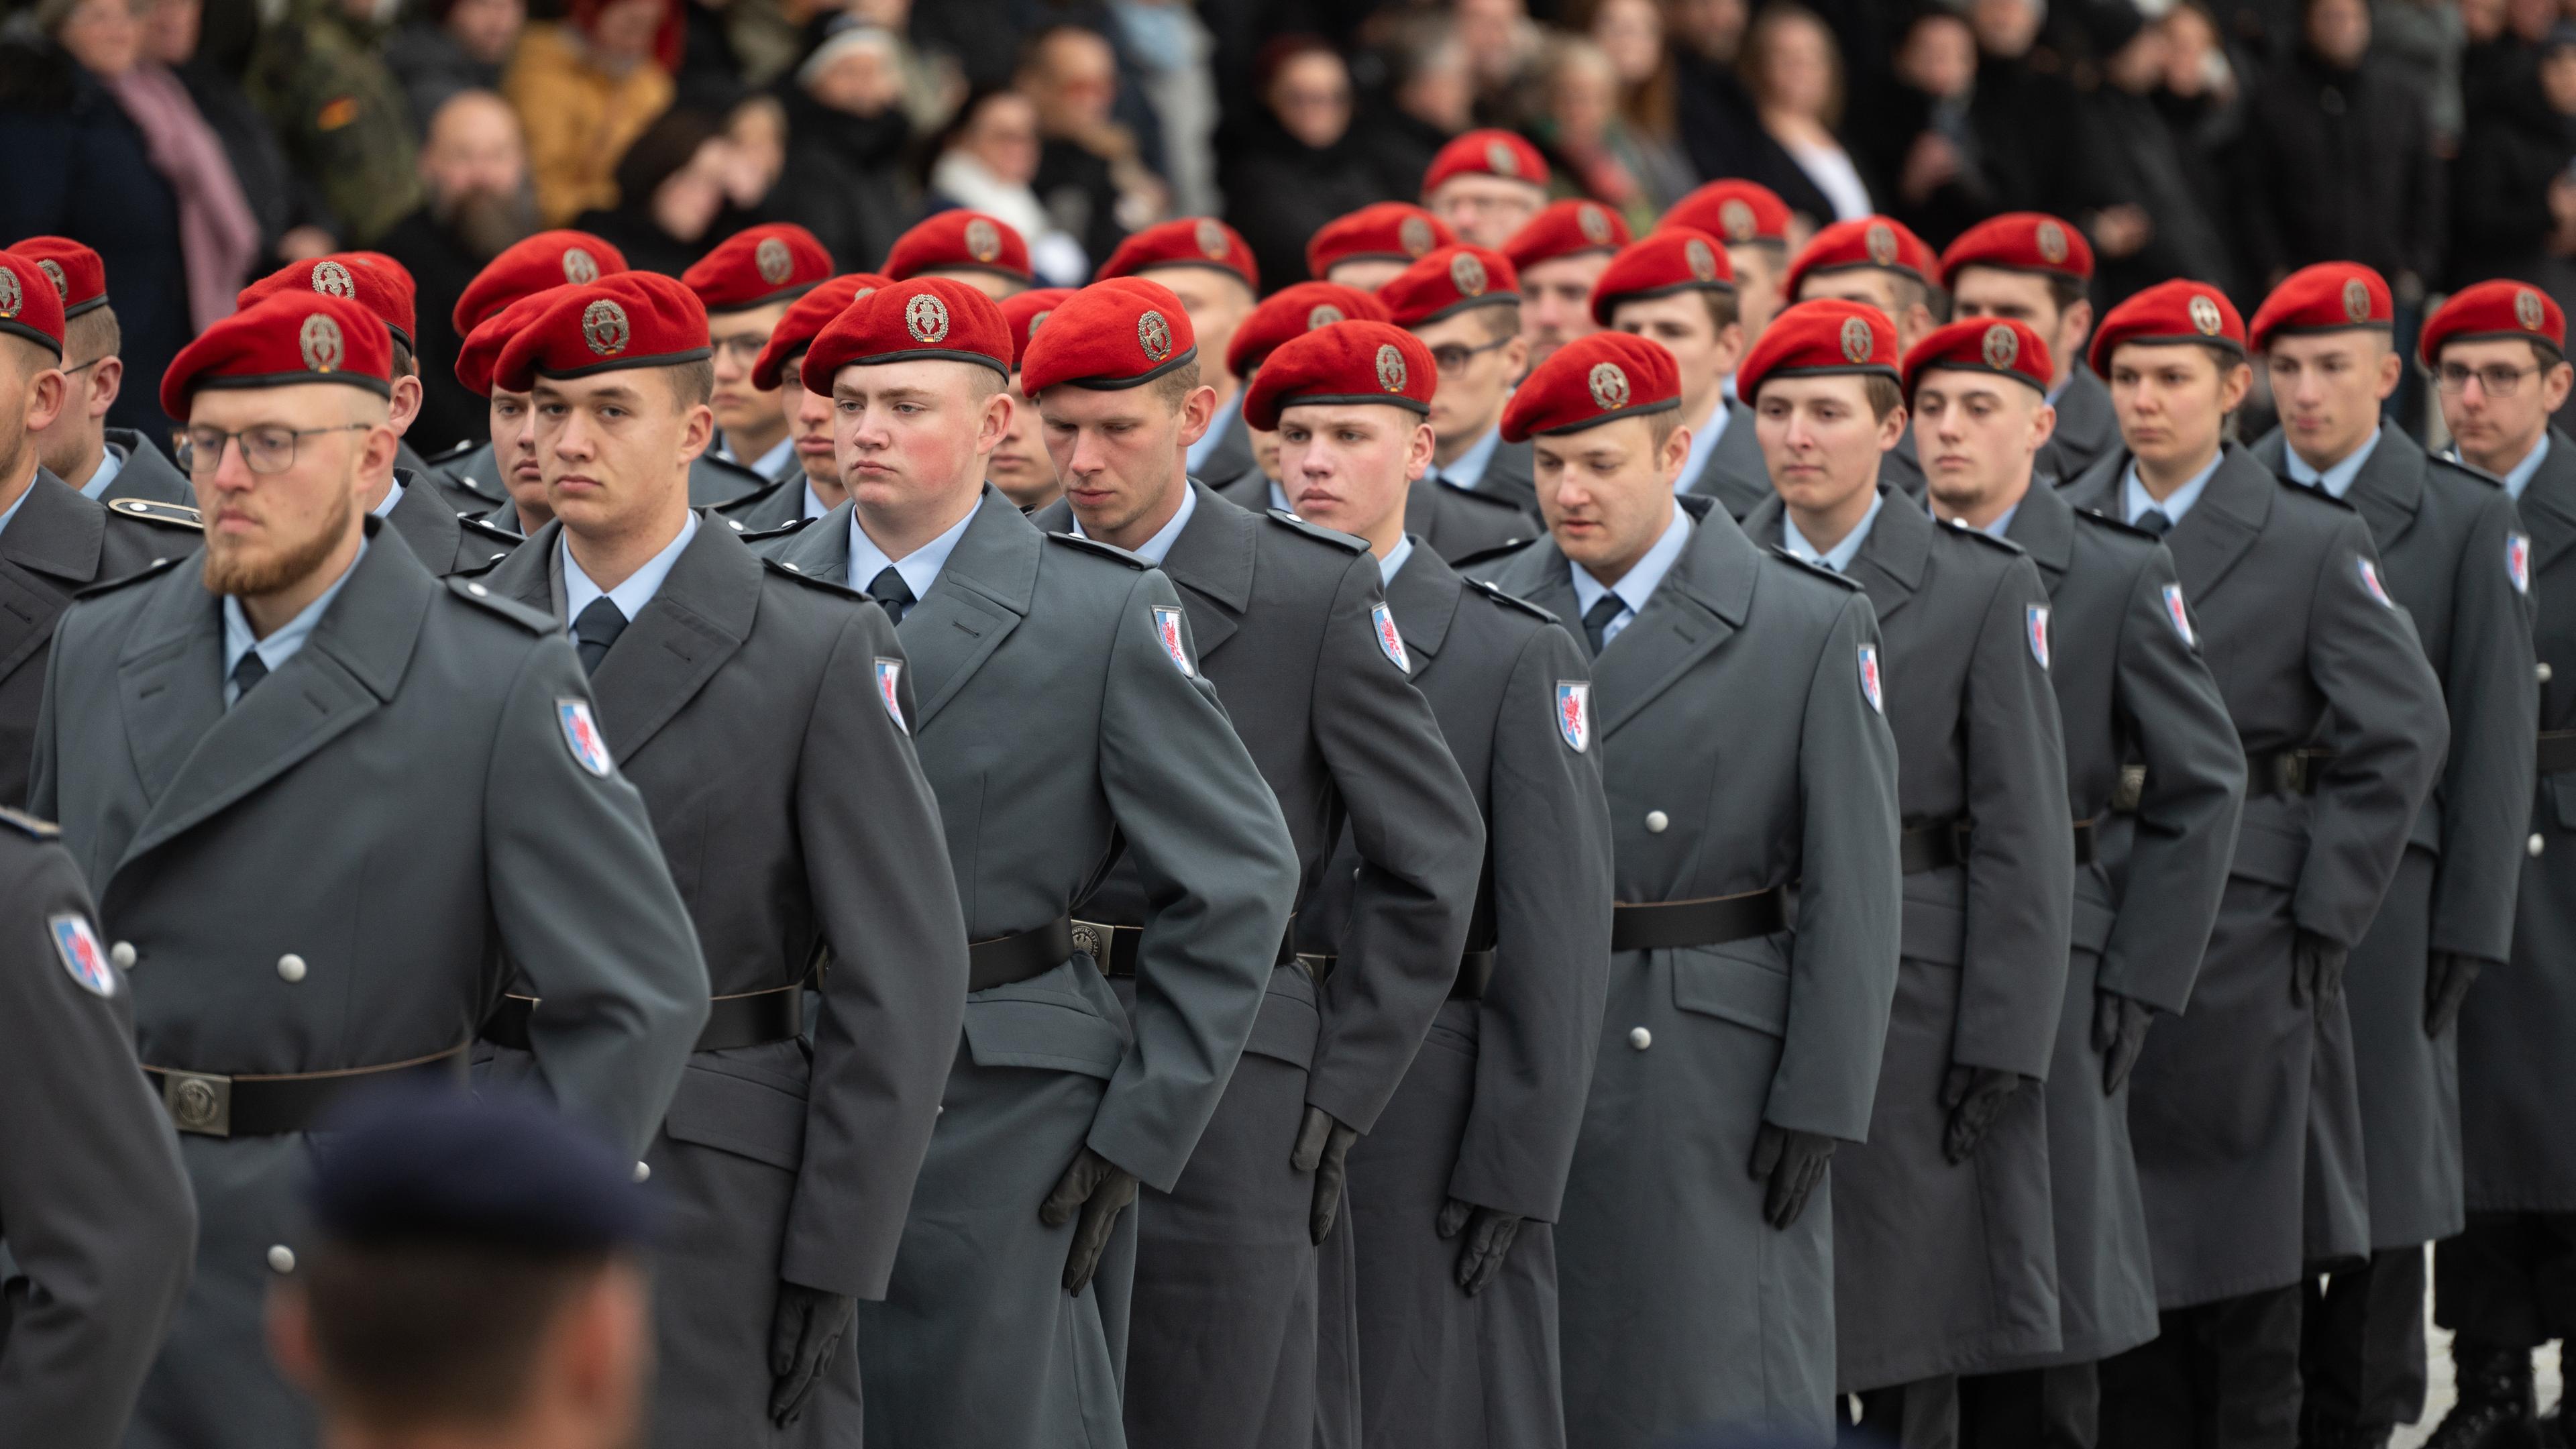  Rund 400 Rekruten legen anlässlich des Gelöbnis zum 68. Gründungstag der Bundeswehr ihr Gelöbnis auf dem Paradeplatz des Bundesministeriums der Verteidigung ab